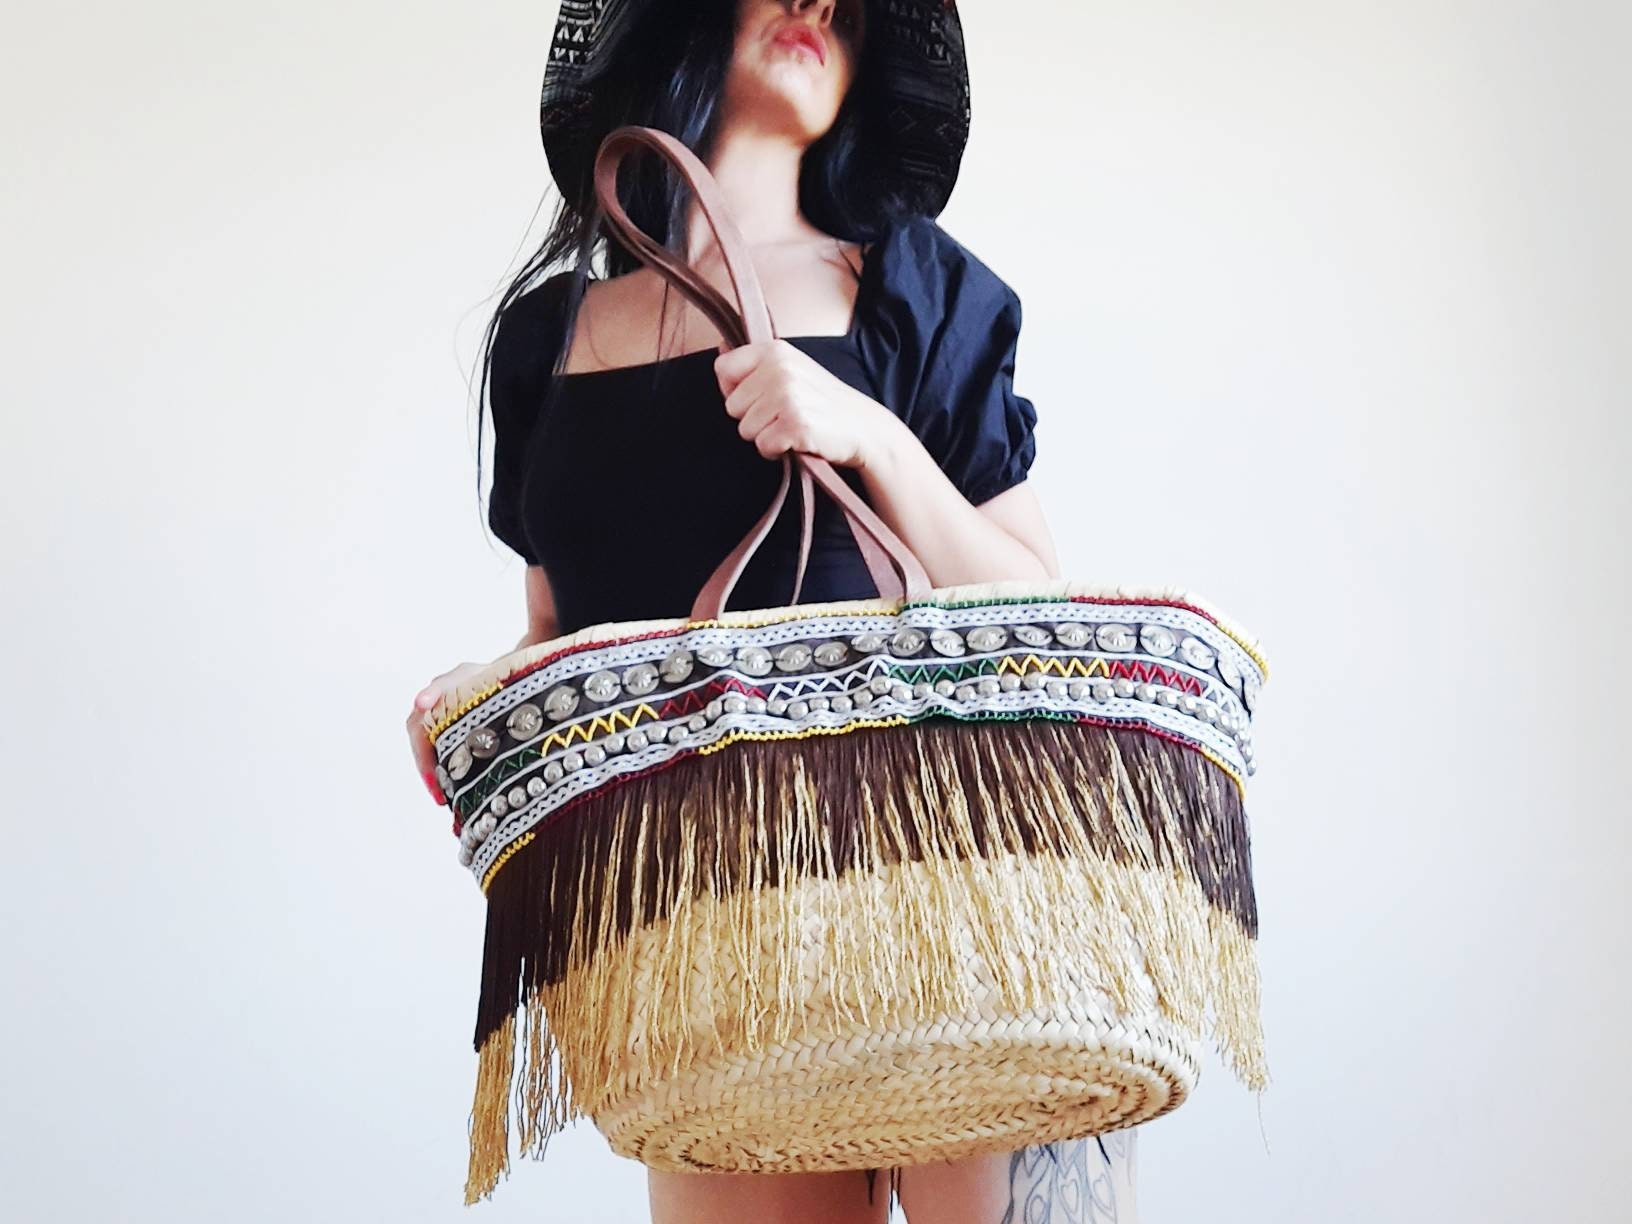 boho bag, summer bag, straw bag, ethnic bag, basket handmade, carrycot,  beach bag, bag for woman, basket, Korb Handtasche, Sacs en paille